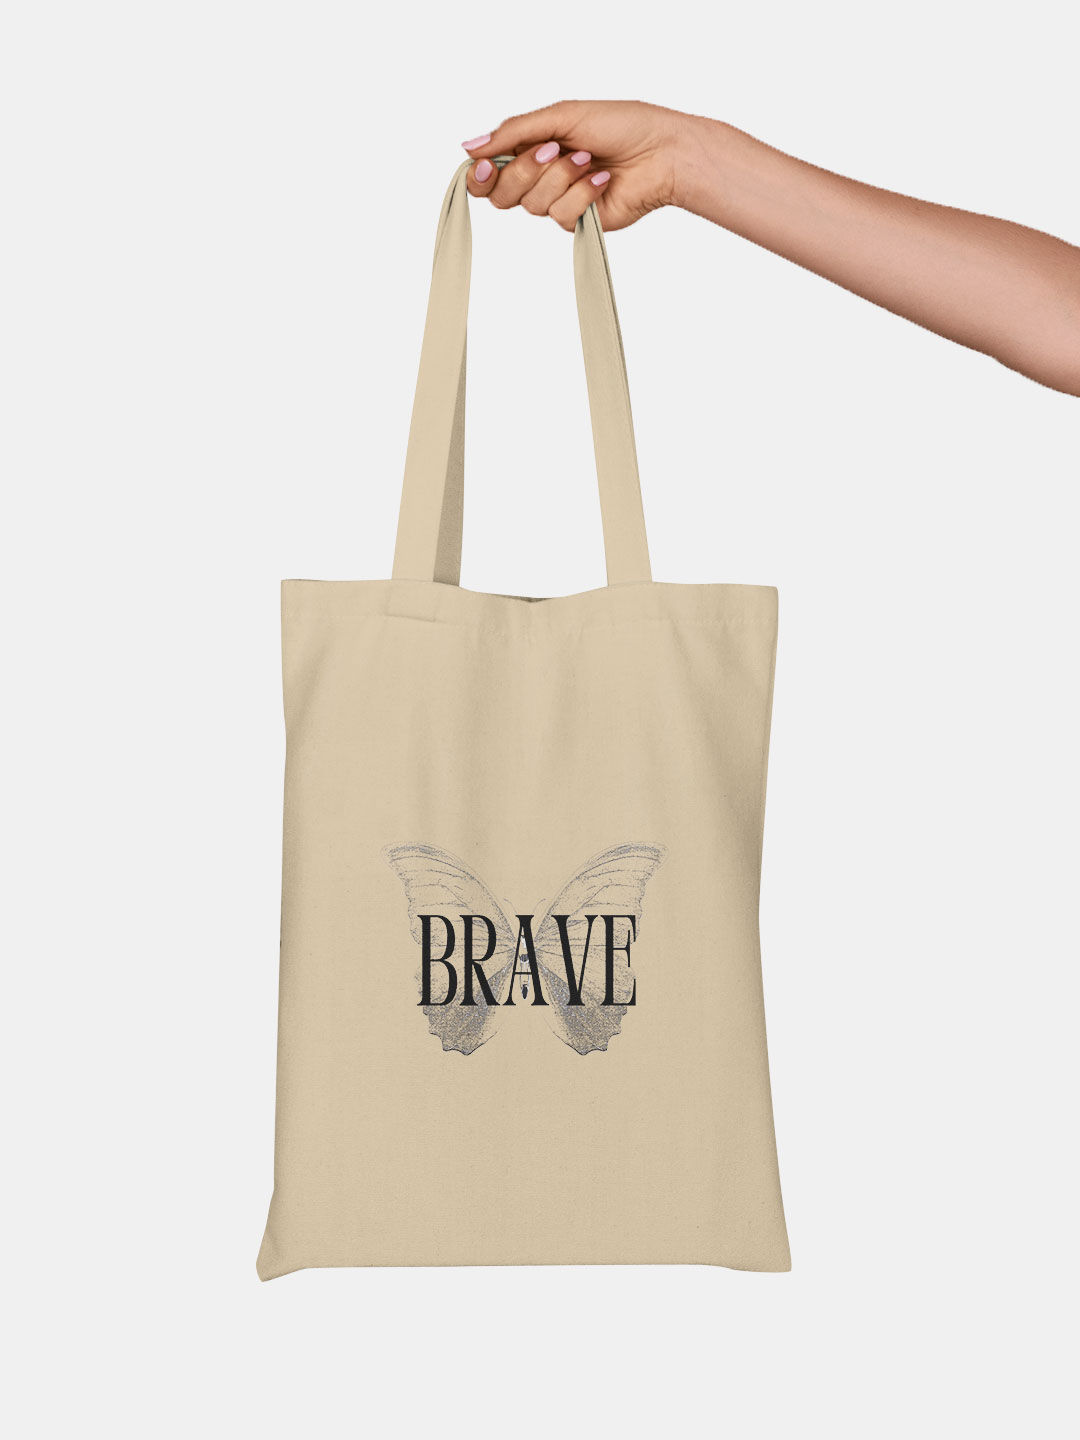 Buy Brave - Tote Bags Tote Bags Online